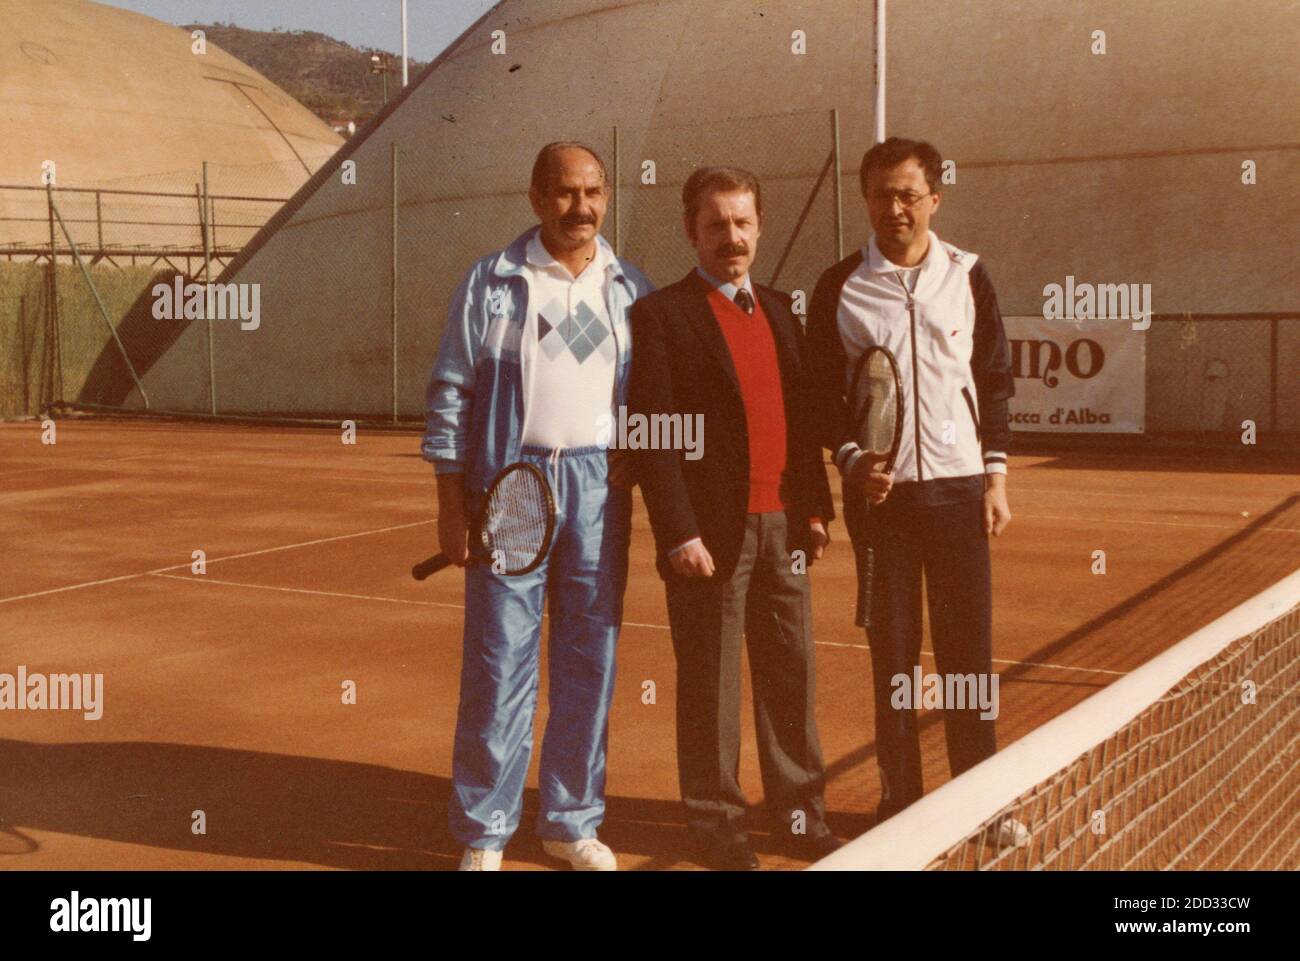 Les journalistes italiens Giorgio Barili et Ettore Trezzi jouant au tennis, Rome, Italie, années 1980 Banque D'Images